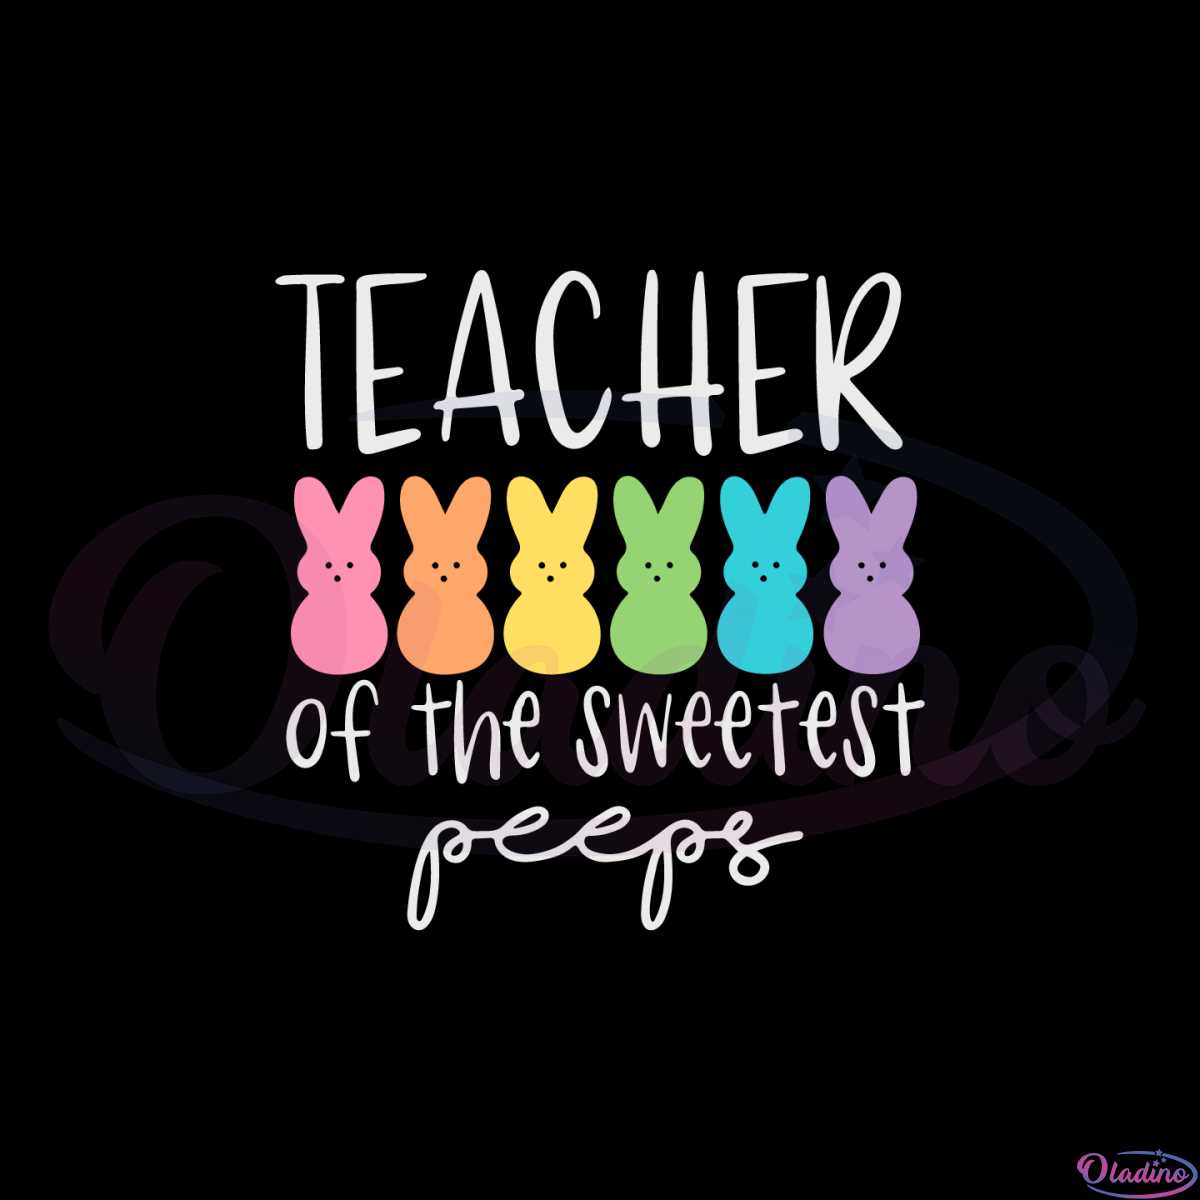 sweetest-peeps-teacher-cute-easter-day-teacher-svg-cutting-files